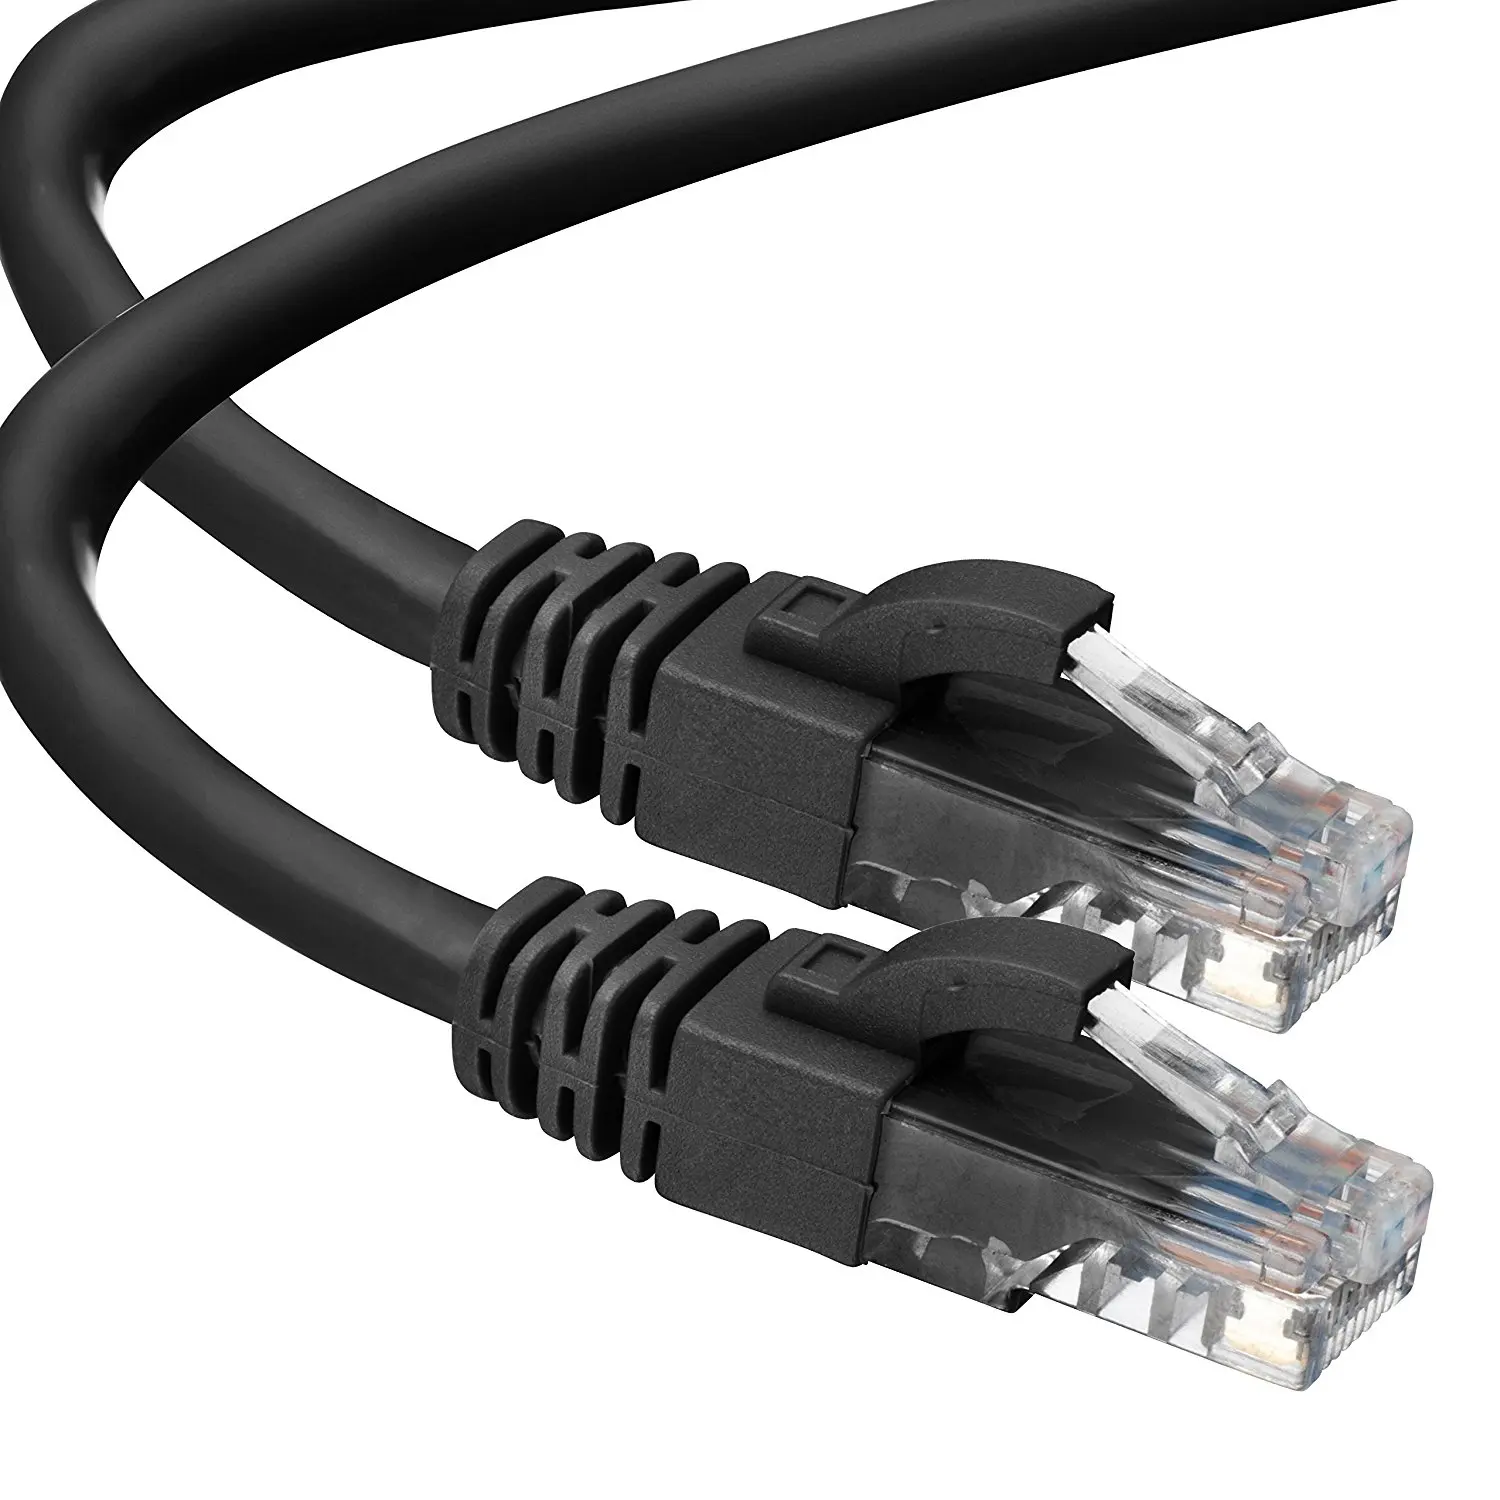 0.2M RJ45 Cat5e Ethernet UTP Network Cable Internet Modem Router LAN Patch Lead